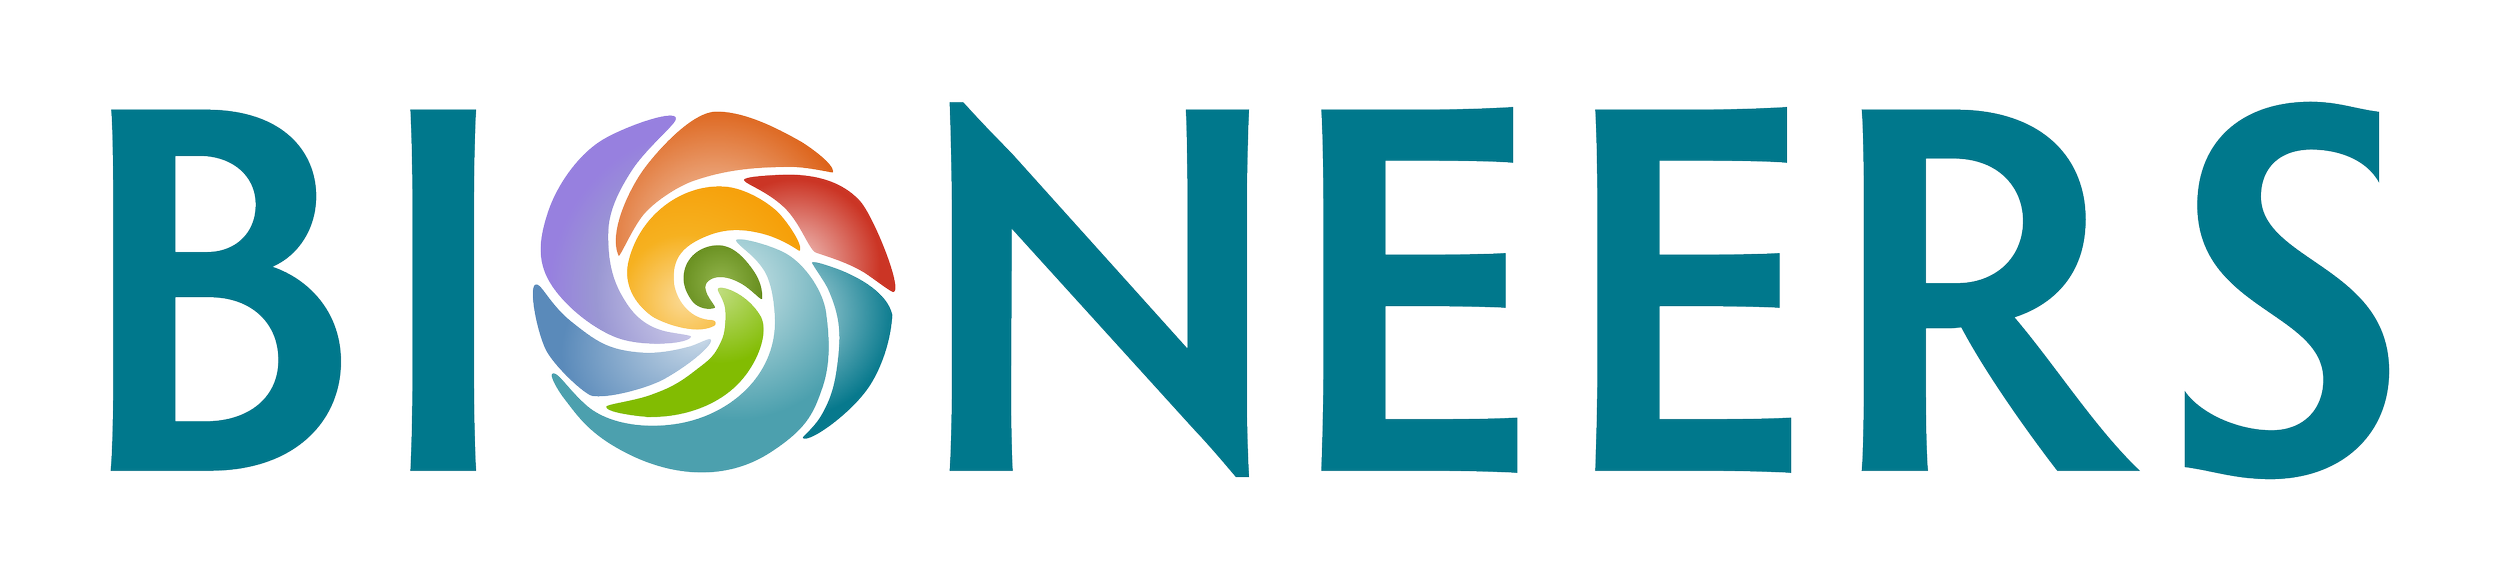 Bioneers logo.png